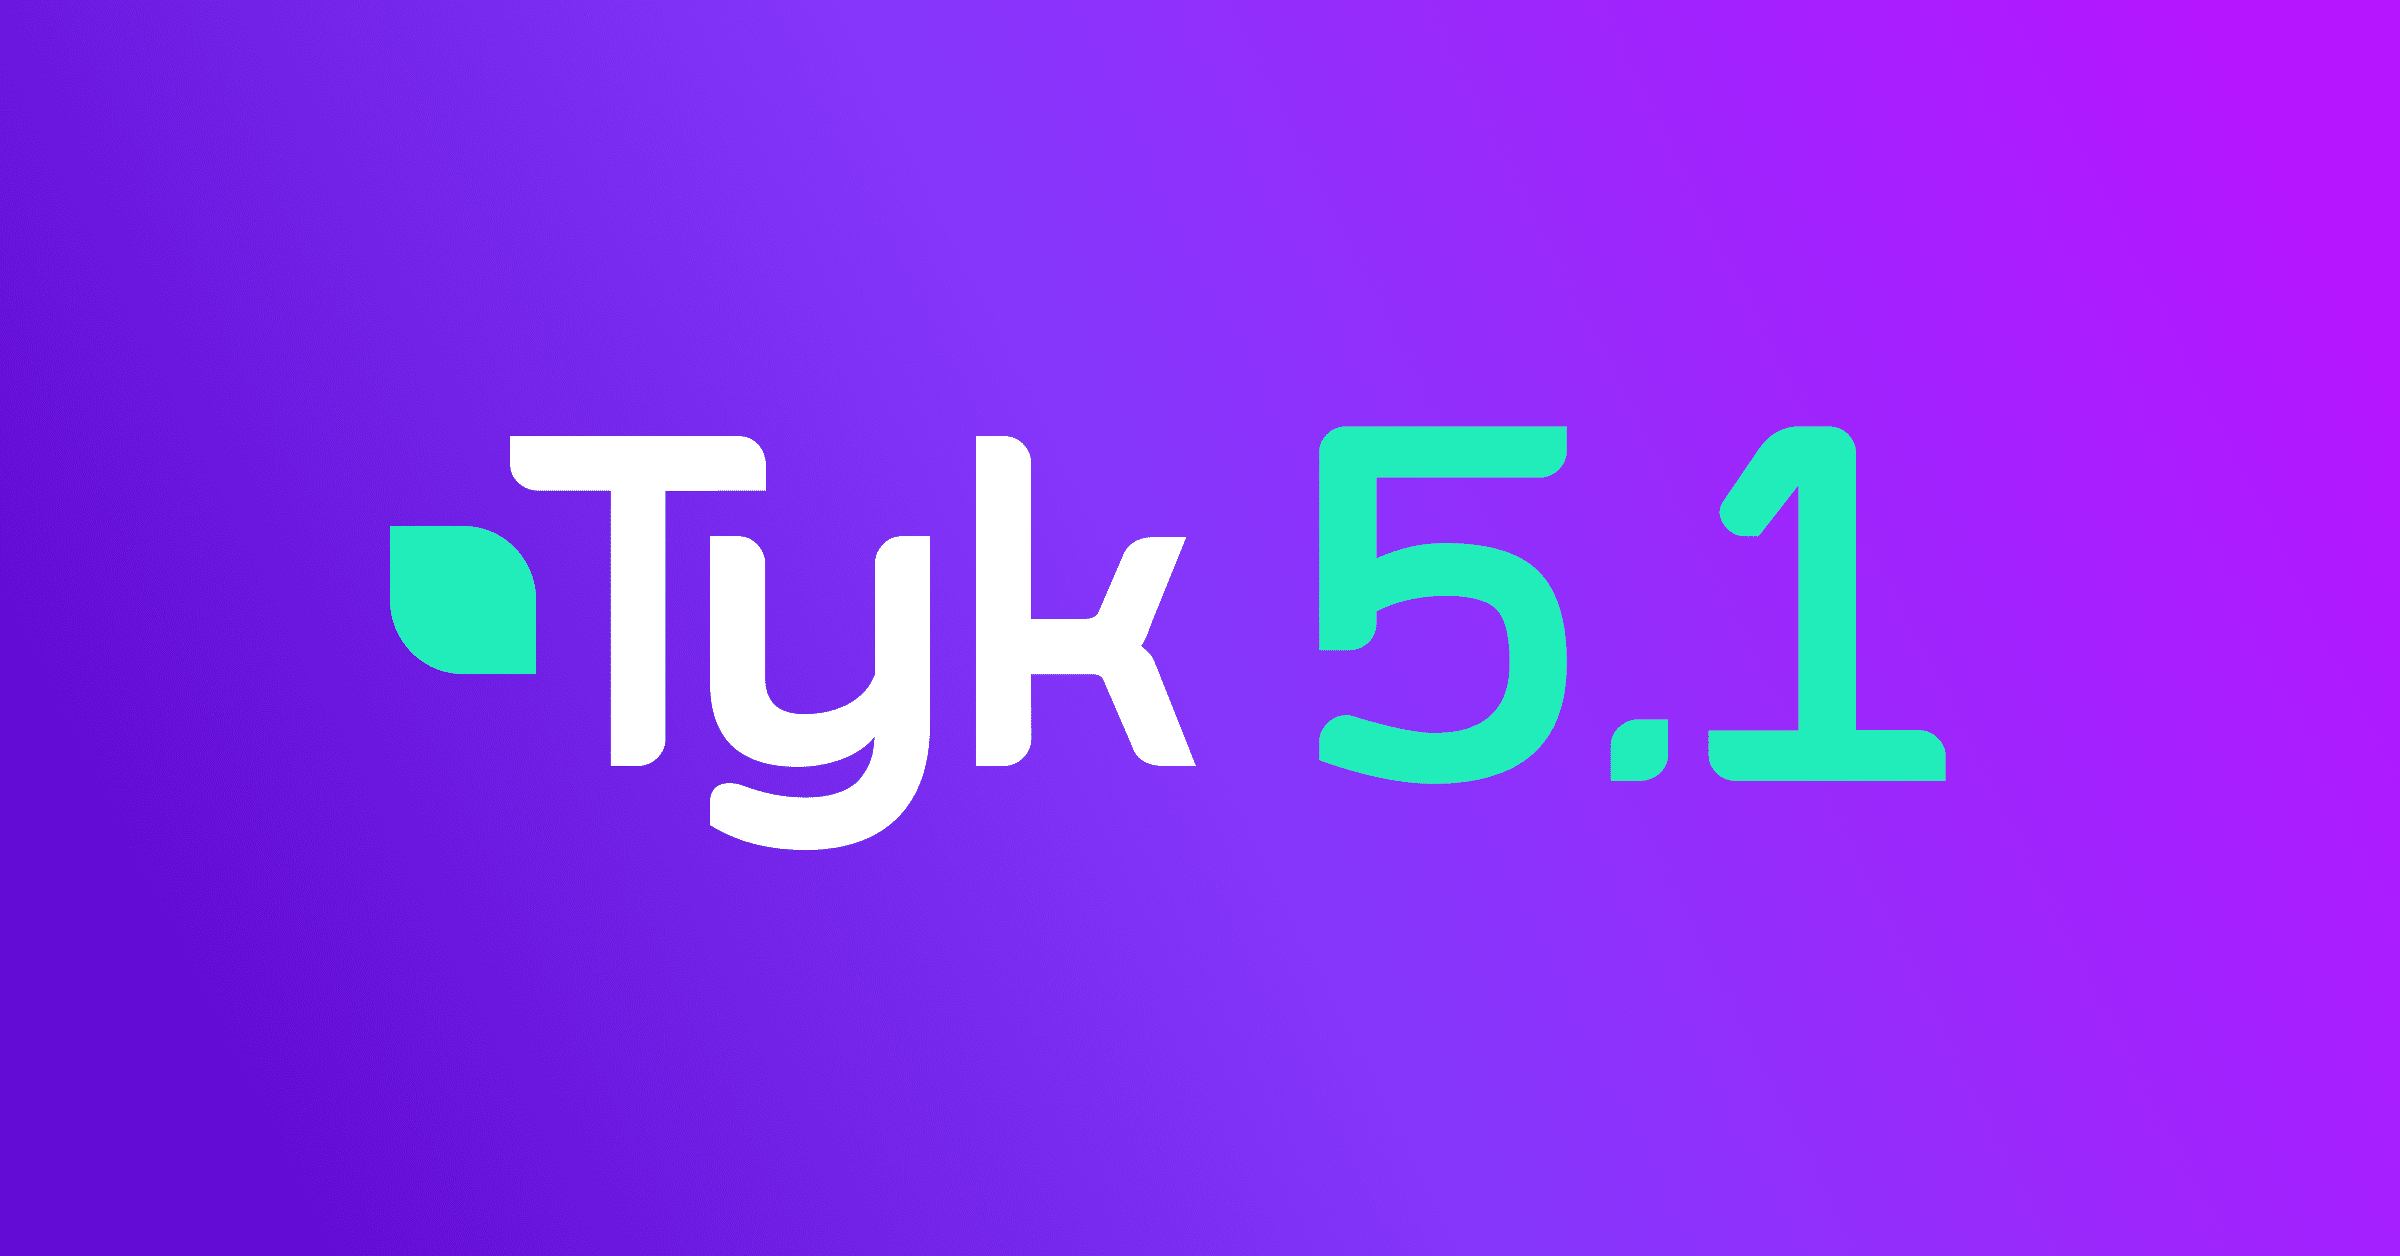 blog - header - Tyk 5.1